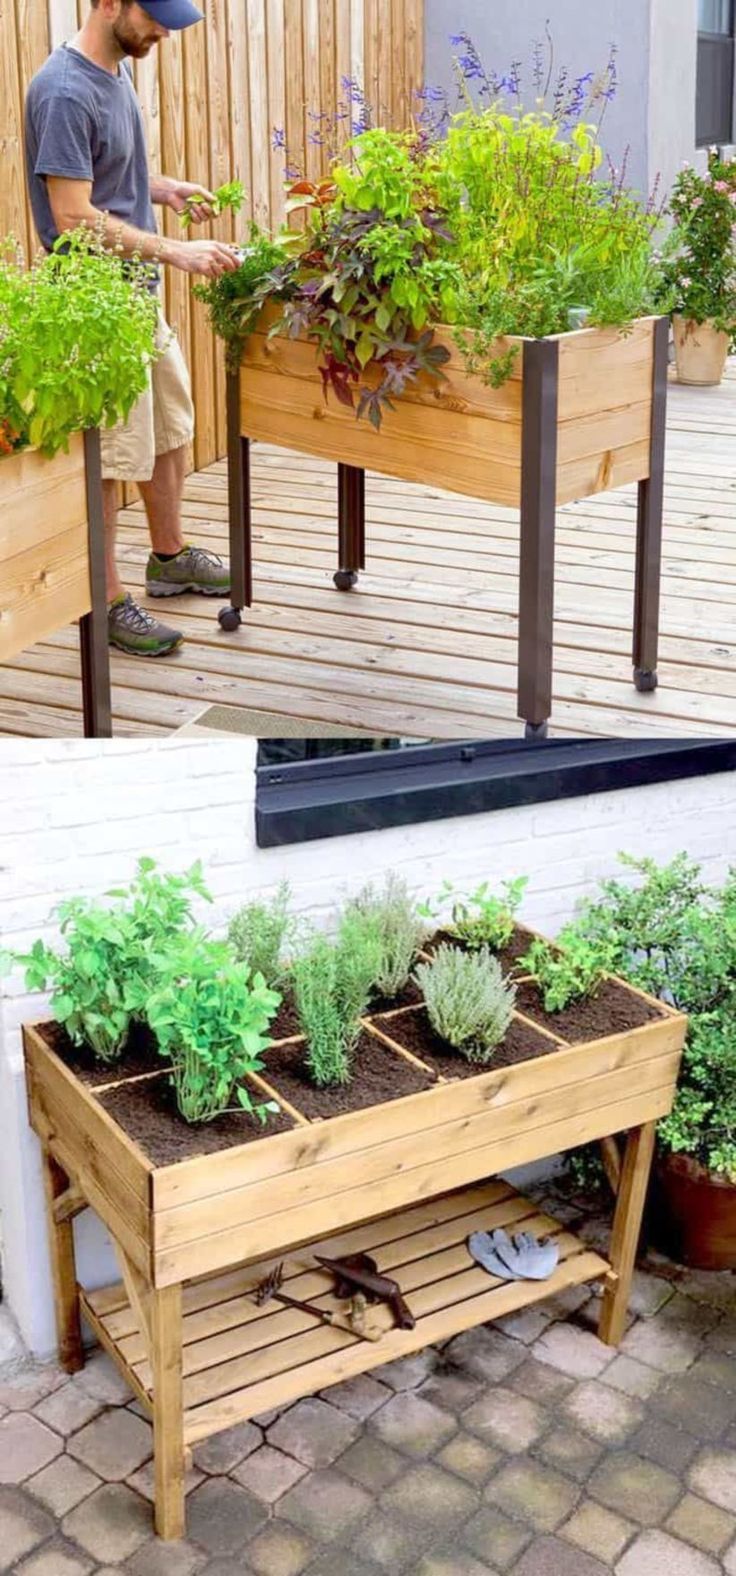 Einfache Gartenideen Schön 35 Indoor Garden Ideen Für Anfänger Auf Kleinem Raum